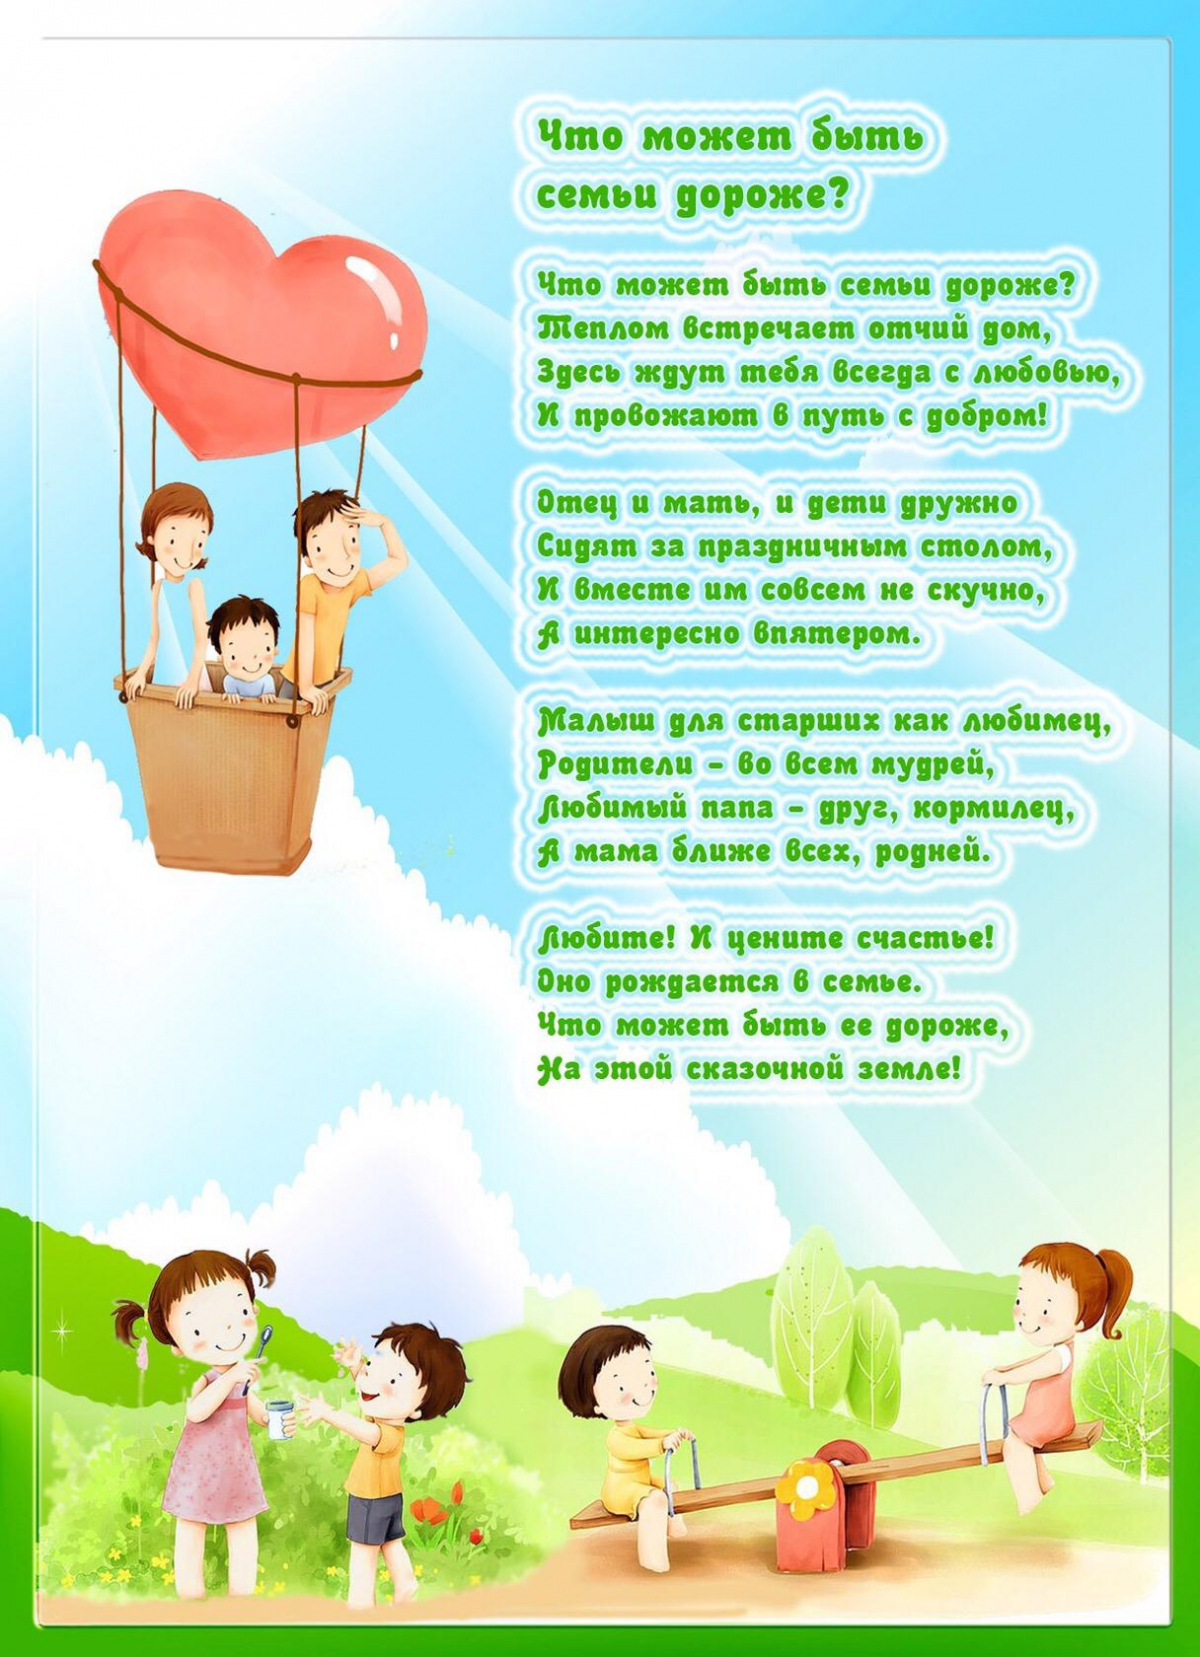 Стих на тему папа. Международный день семьи. День семьи 15 мая. День семьи в детском саду. Международный день семь.